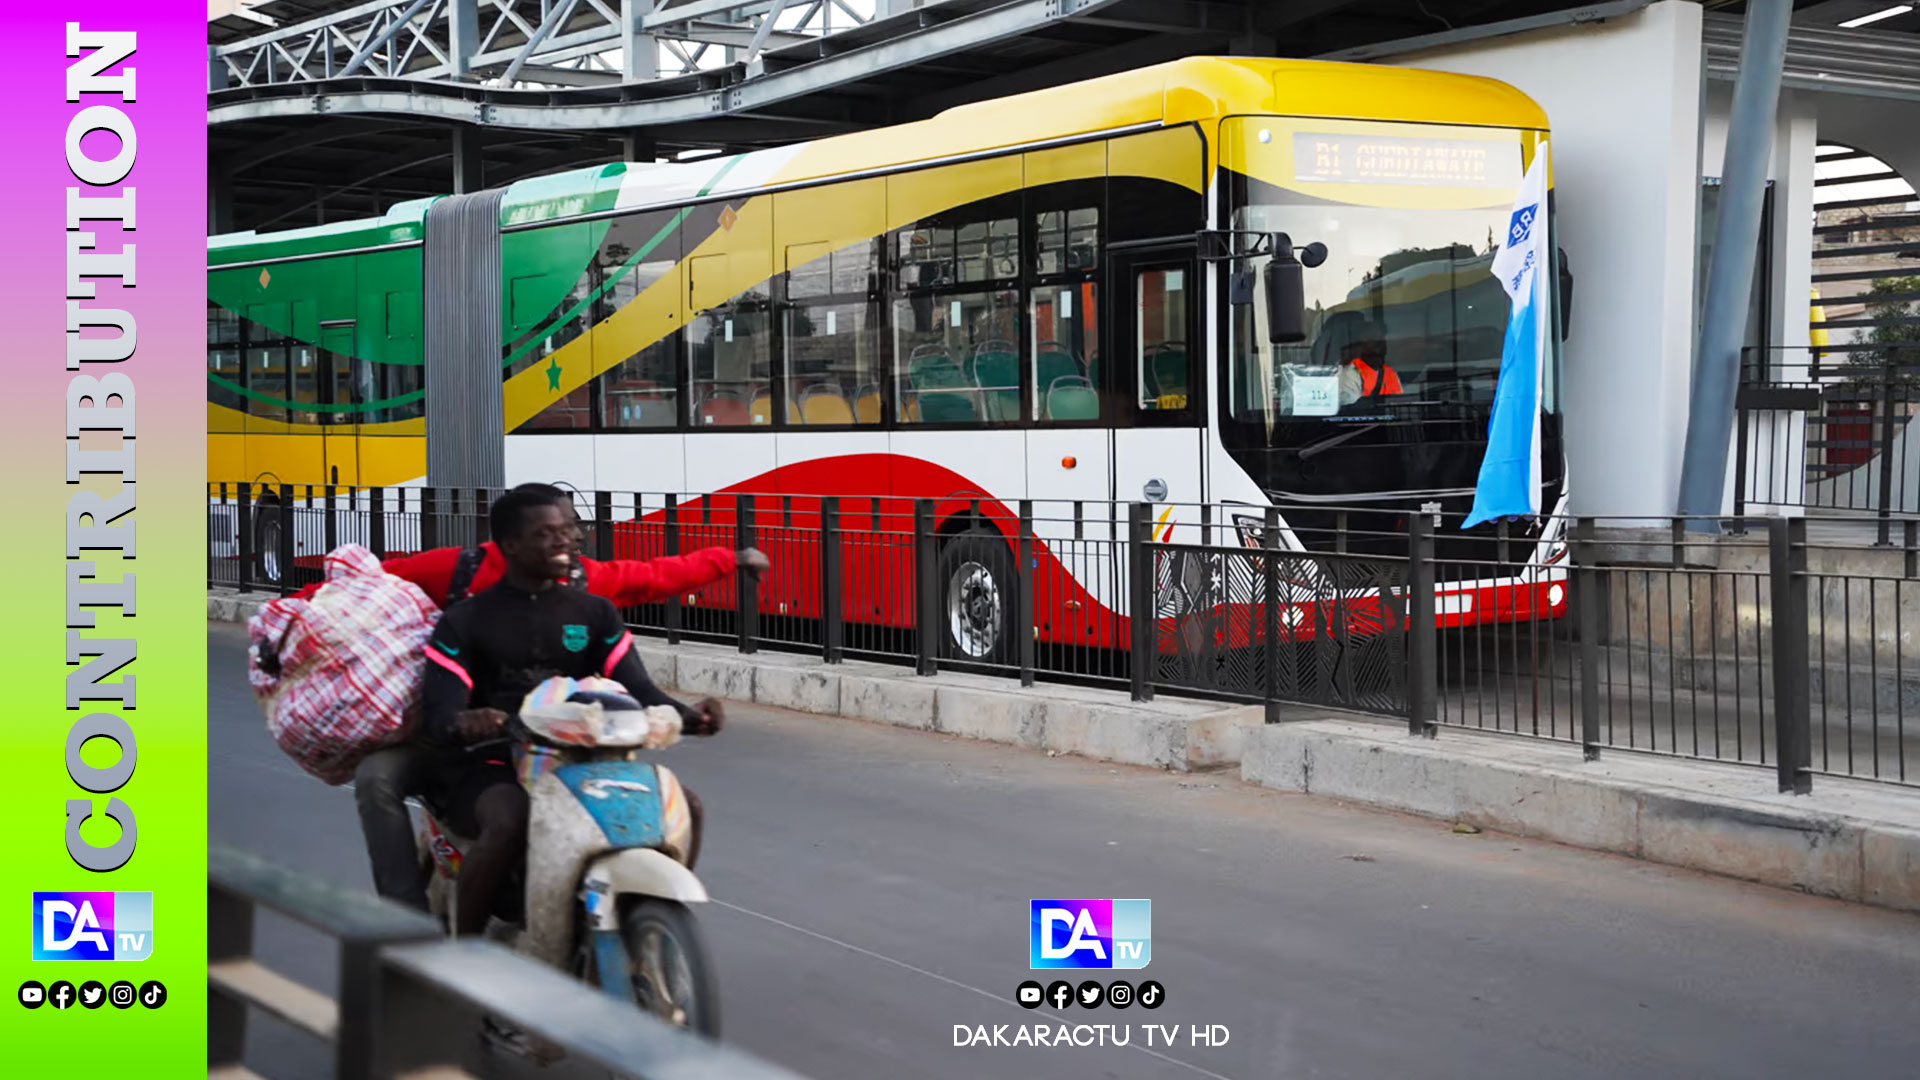 Dakar : Entre Bravade et Danger, le Péril des Piétons sur la Chaussée du BRT ( Par Karamokho D. SOUNG ) 